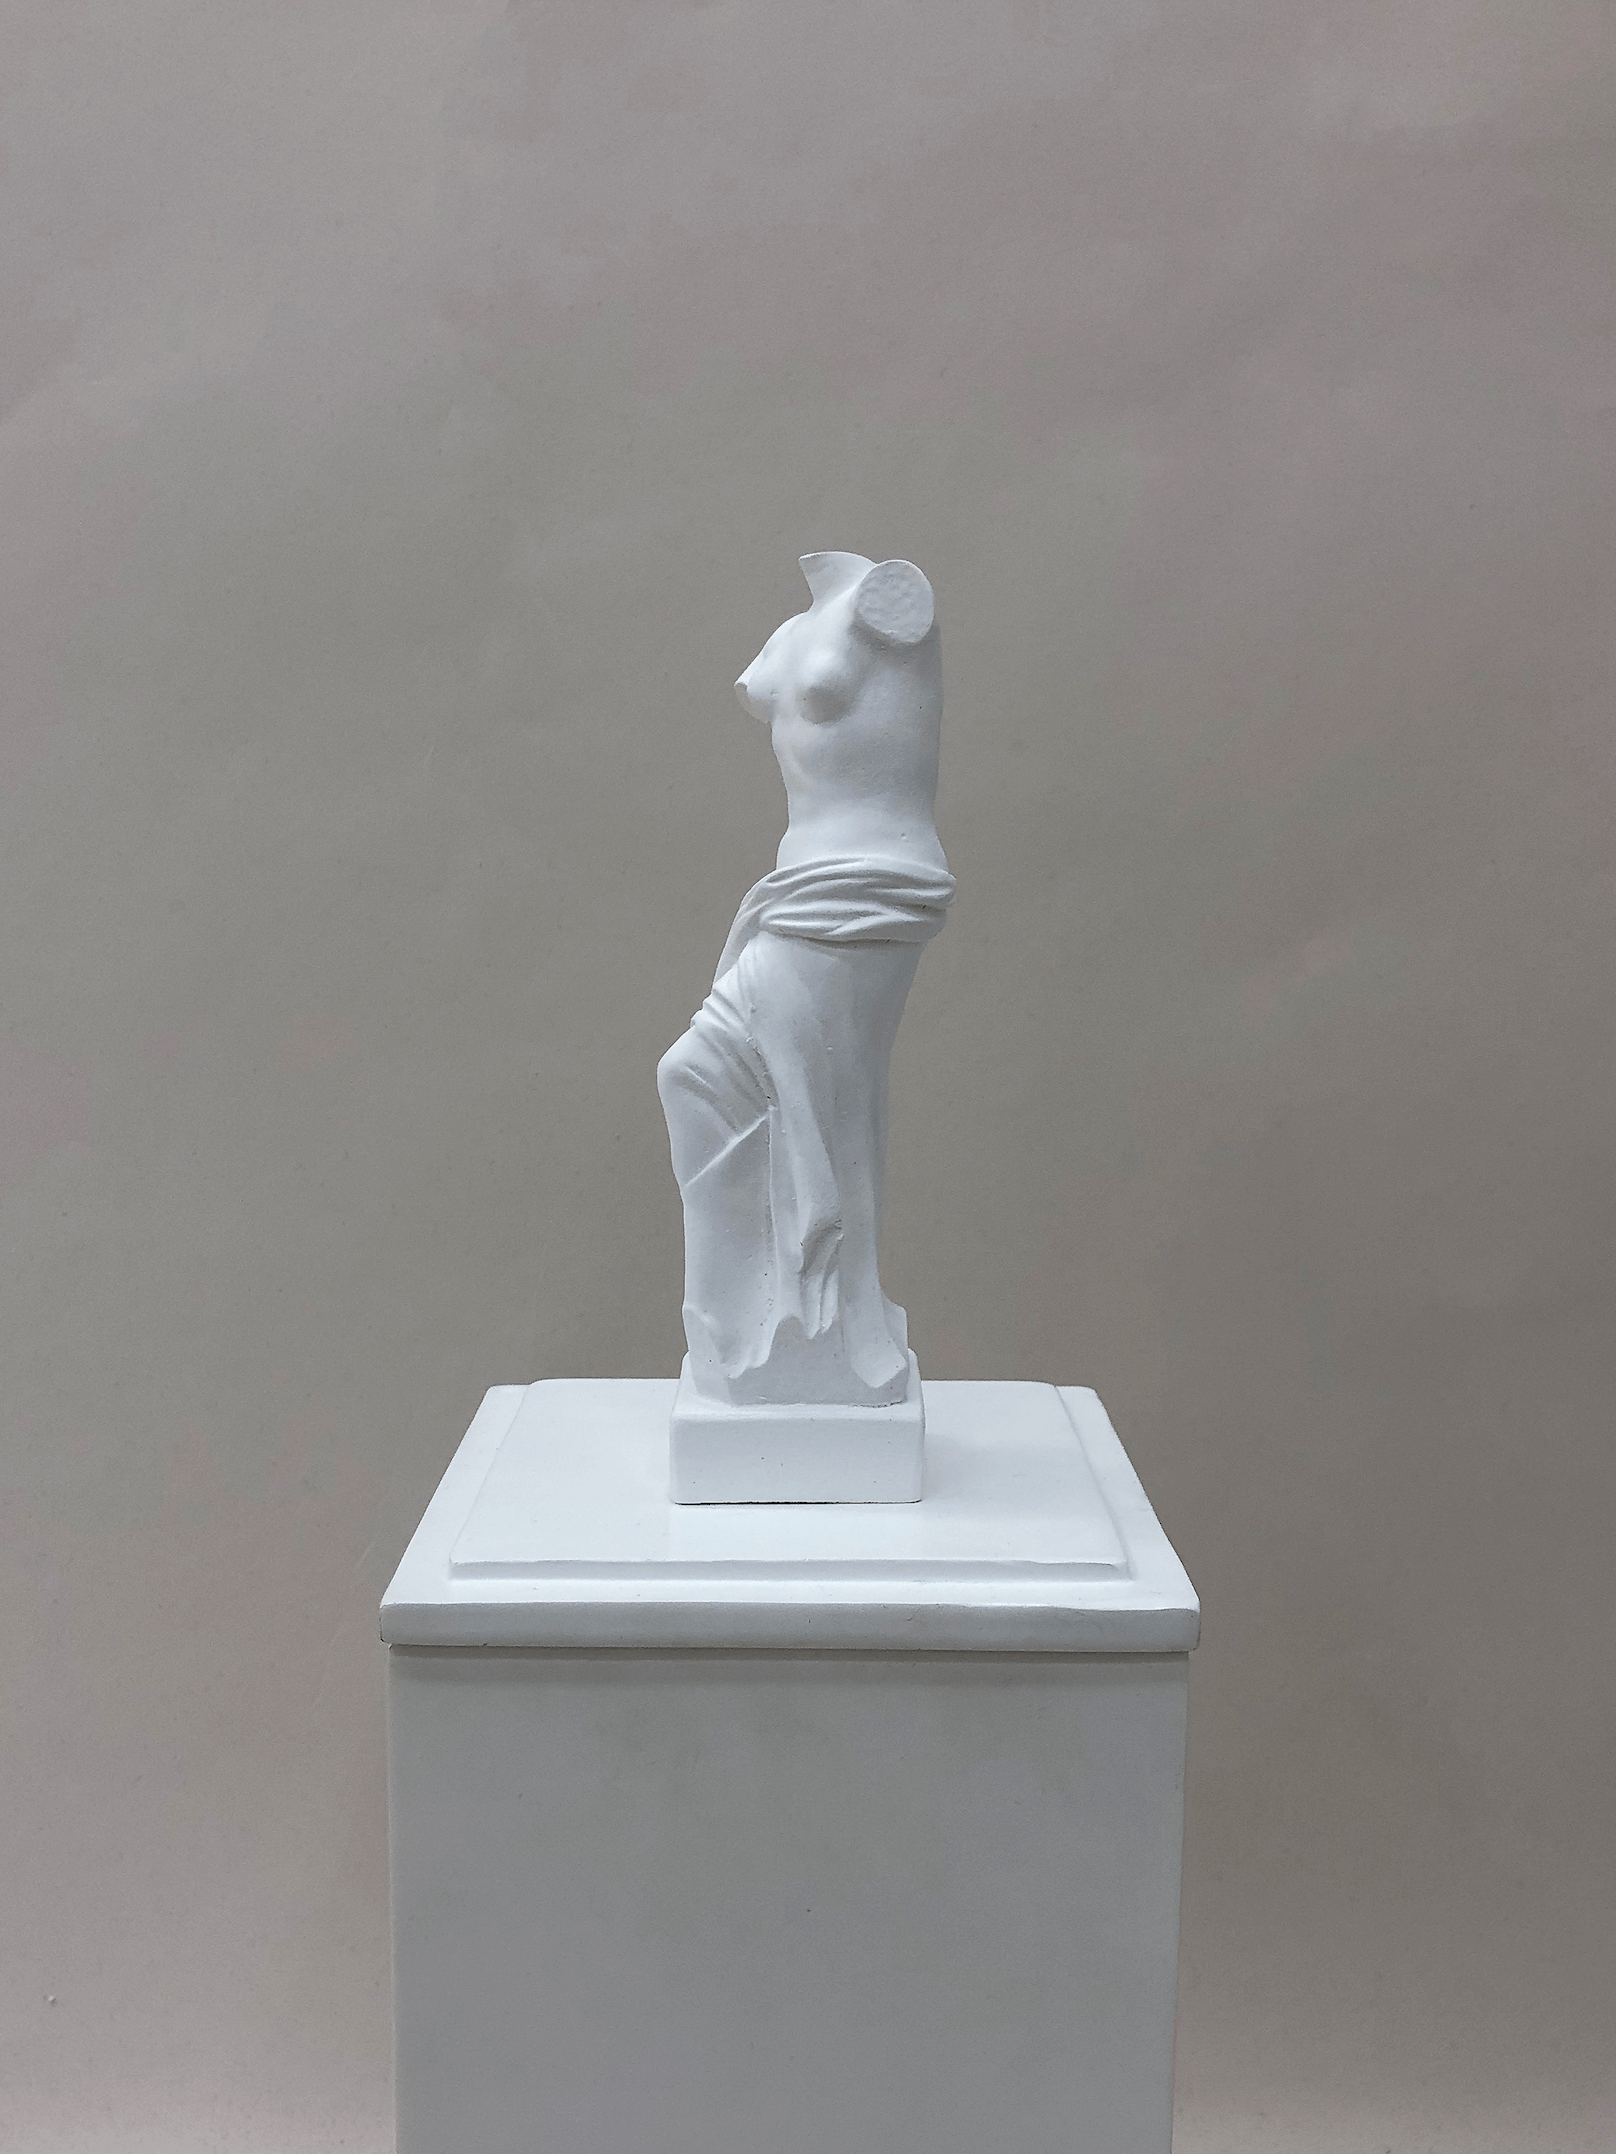 1. Venus Sculpture